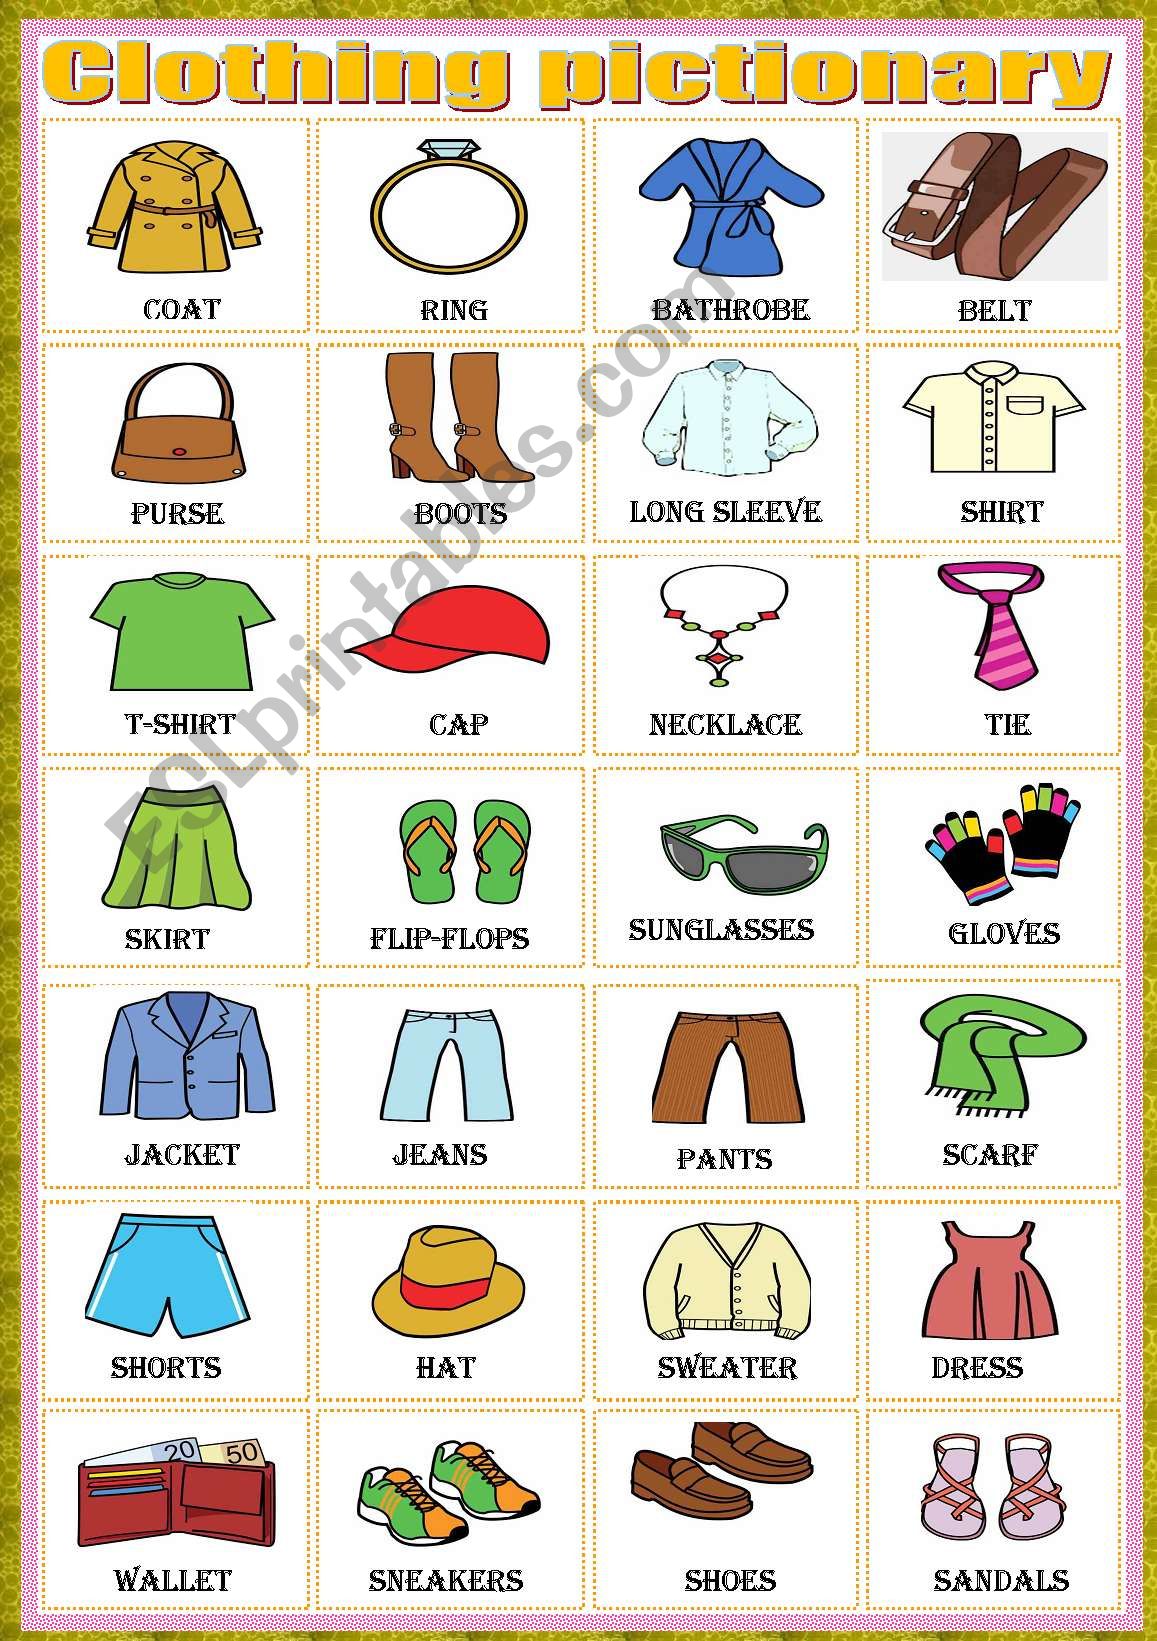 Clothing-pictionary worksheet